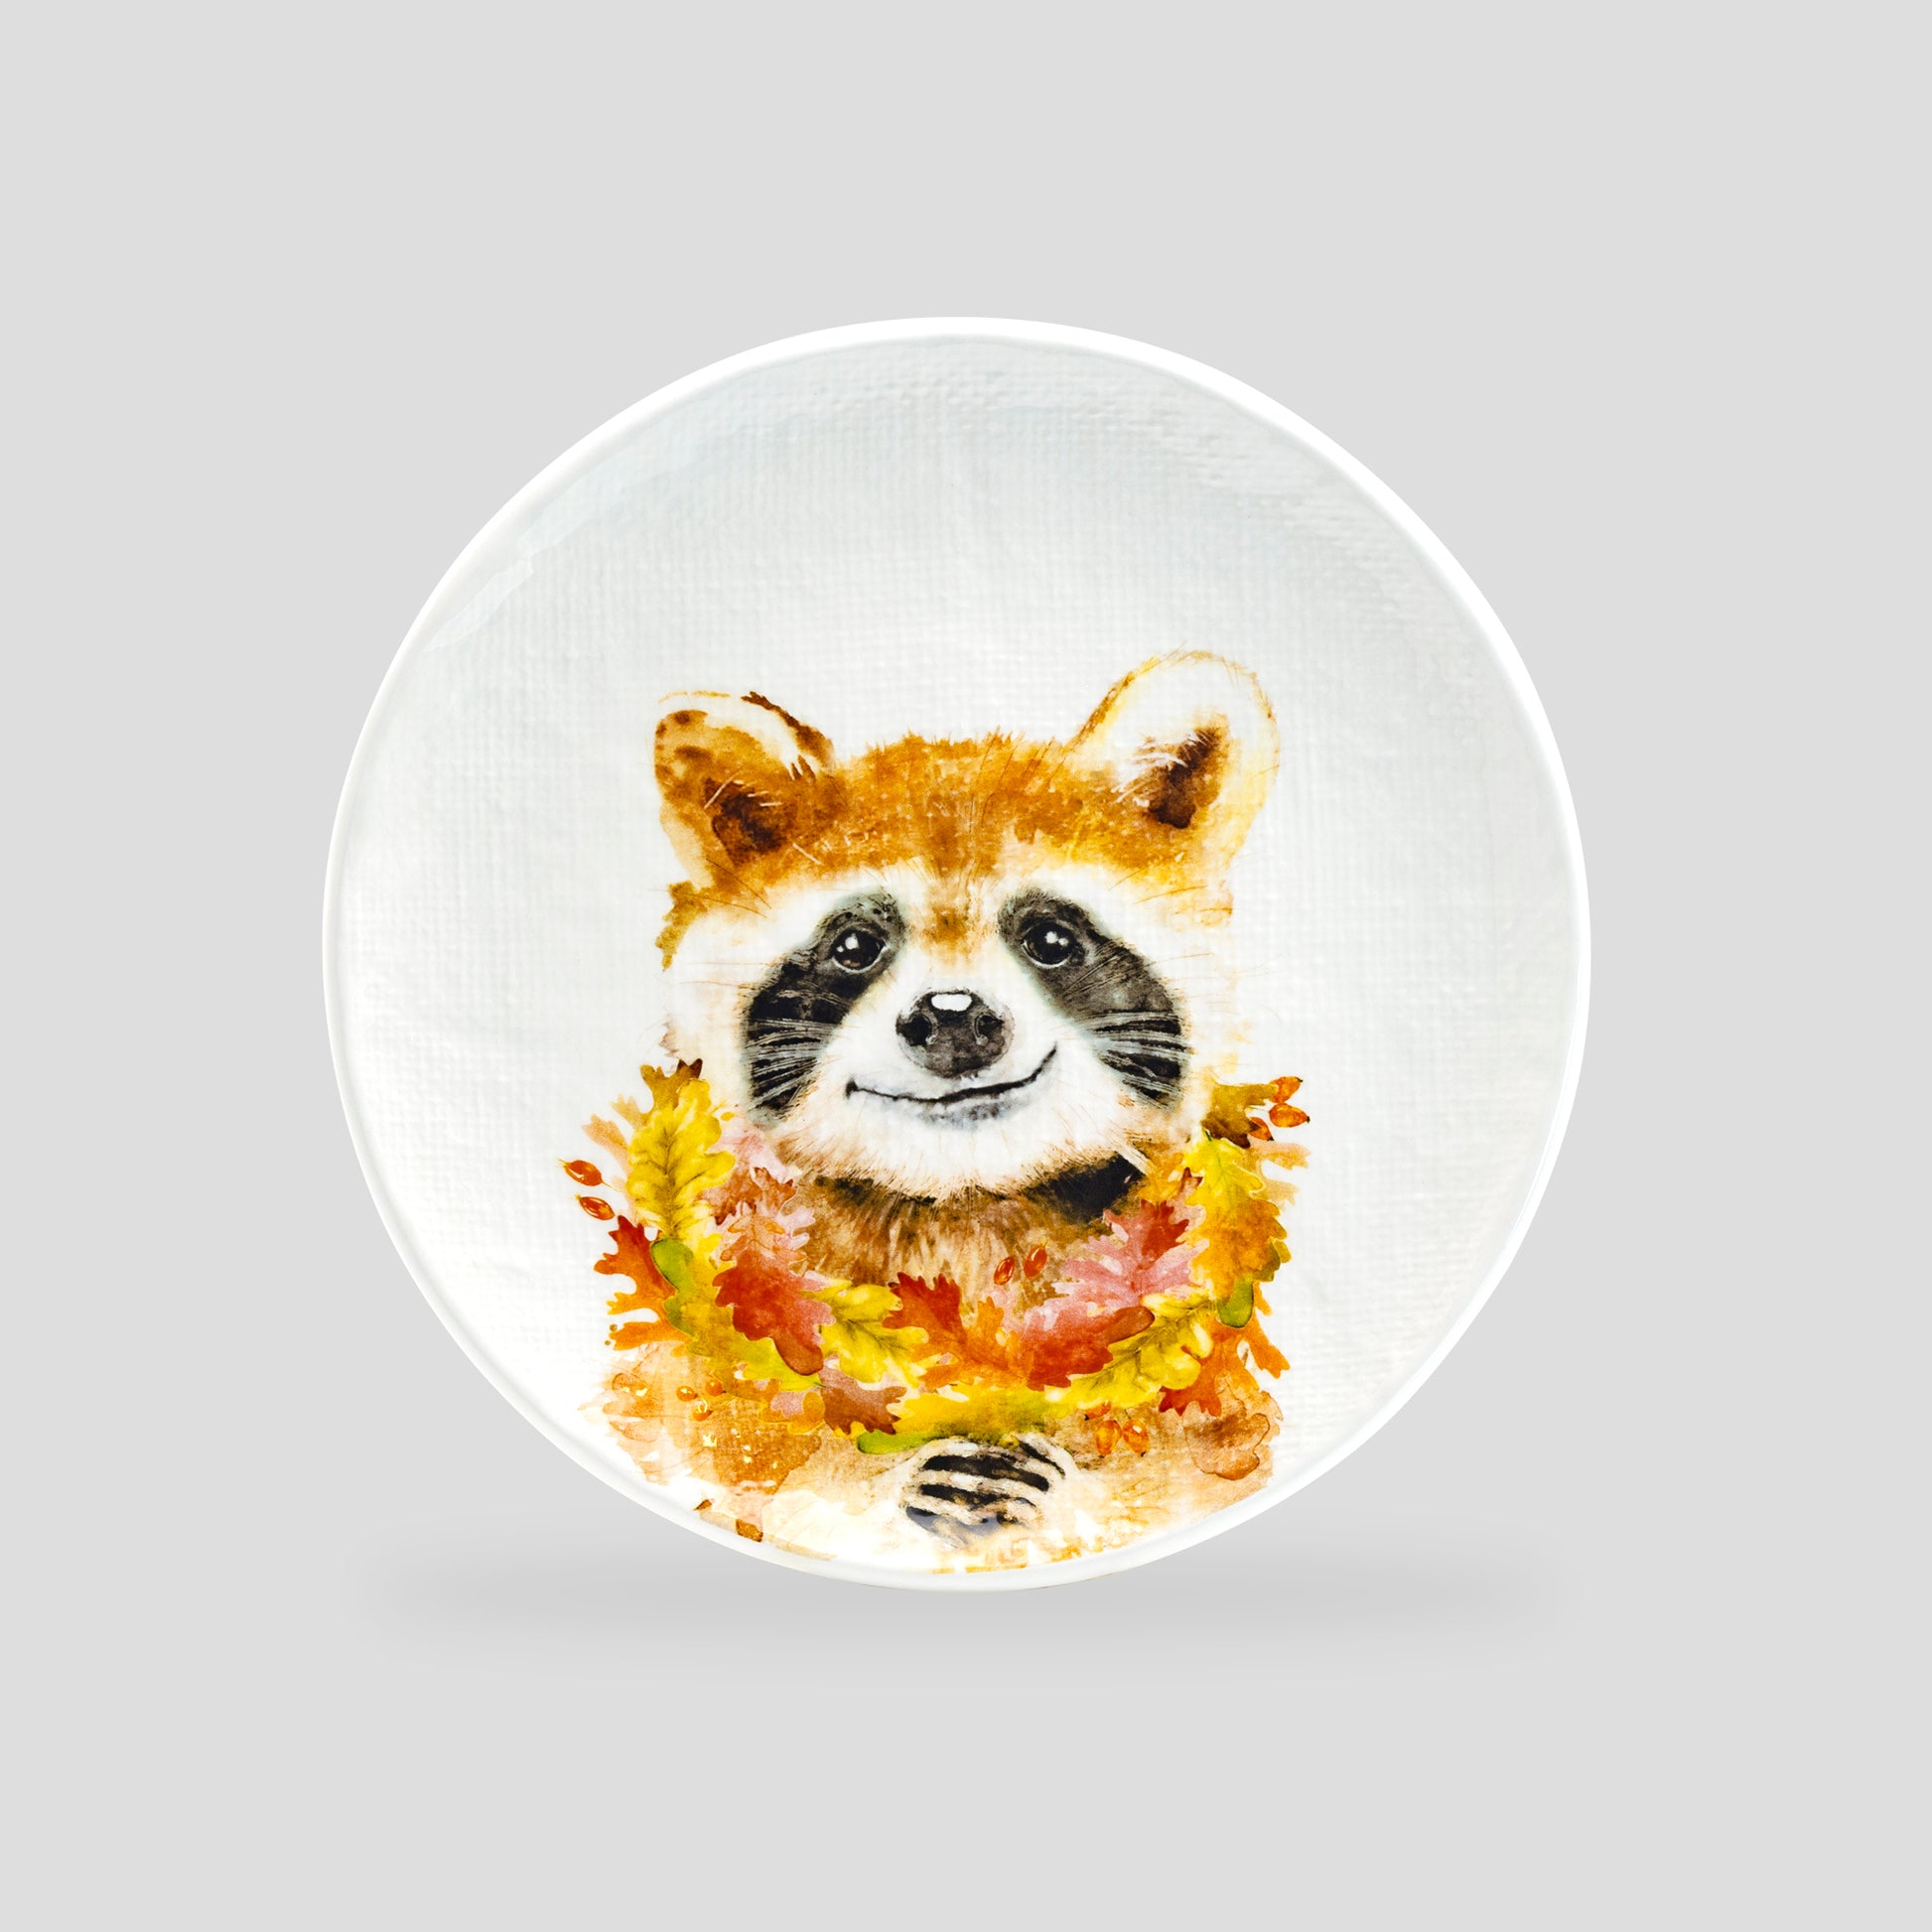 Potter's Studio 8.5" Happy Raccoon Salad / Dessert Plate